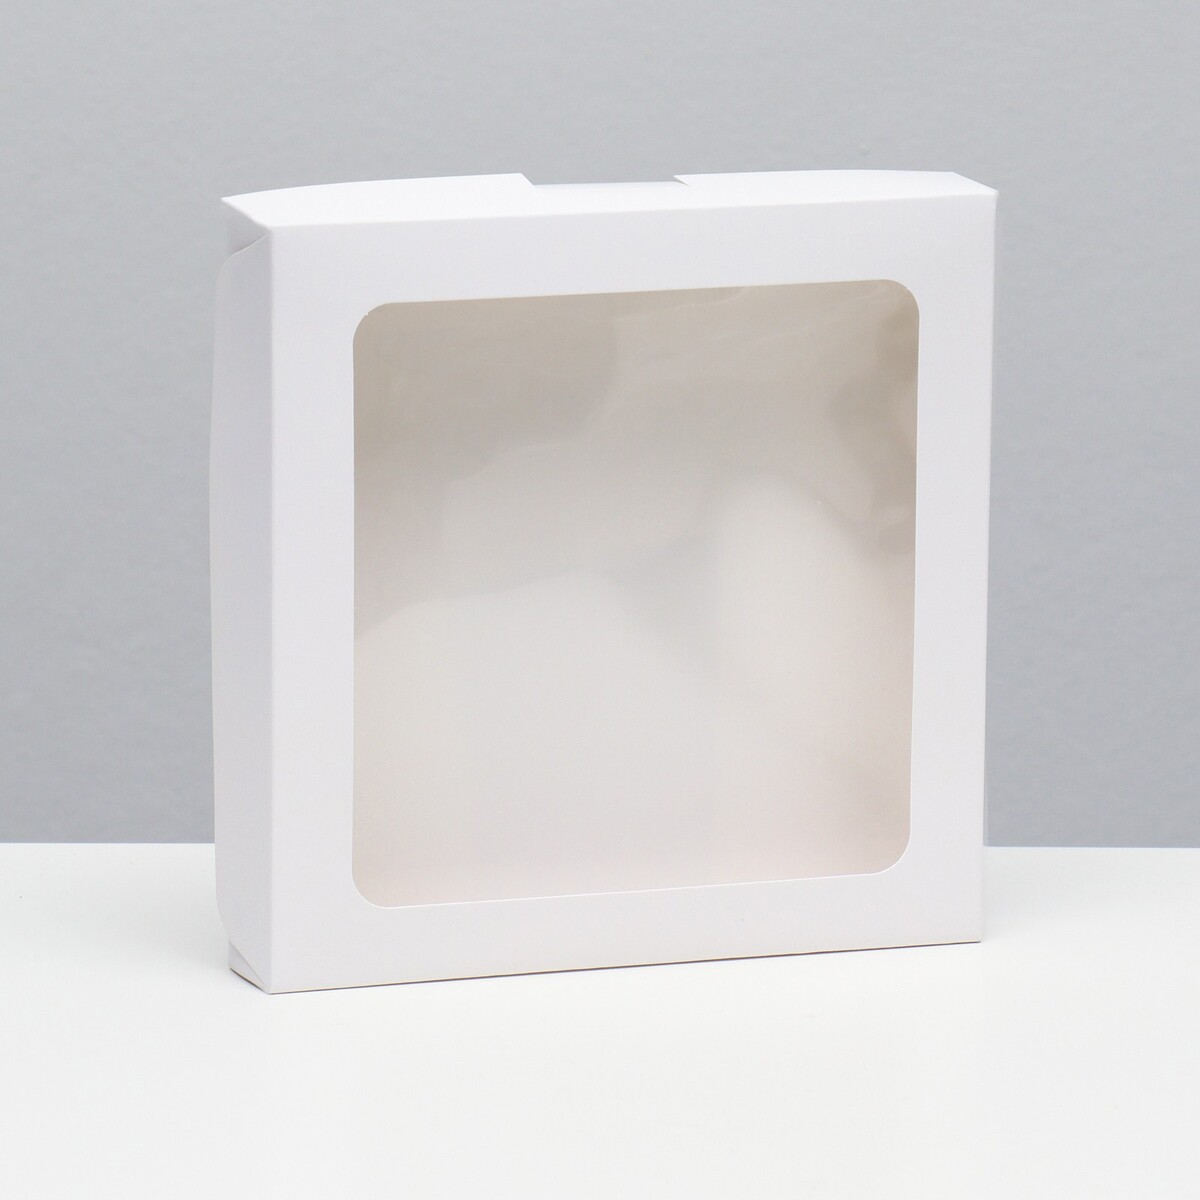 Коробка самосборная, белая, 19 х 19 х 3 см коробка для десерта белая 10 х 10 х 6 5 см